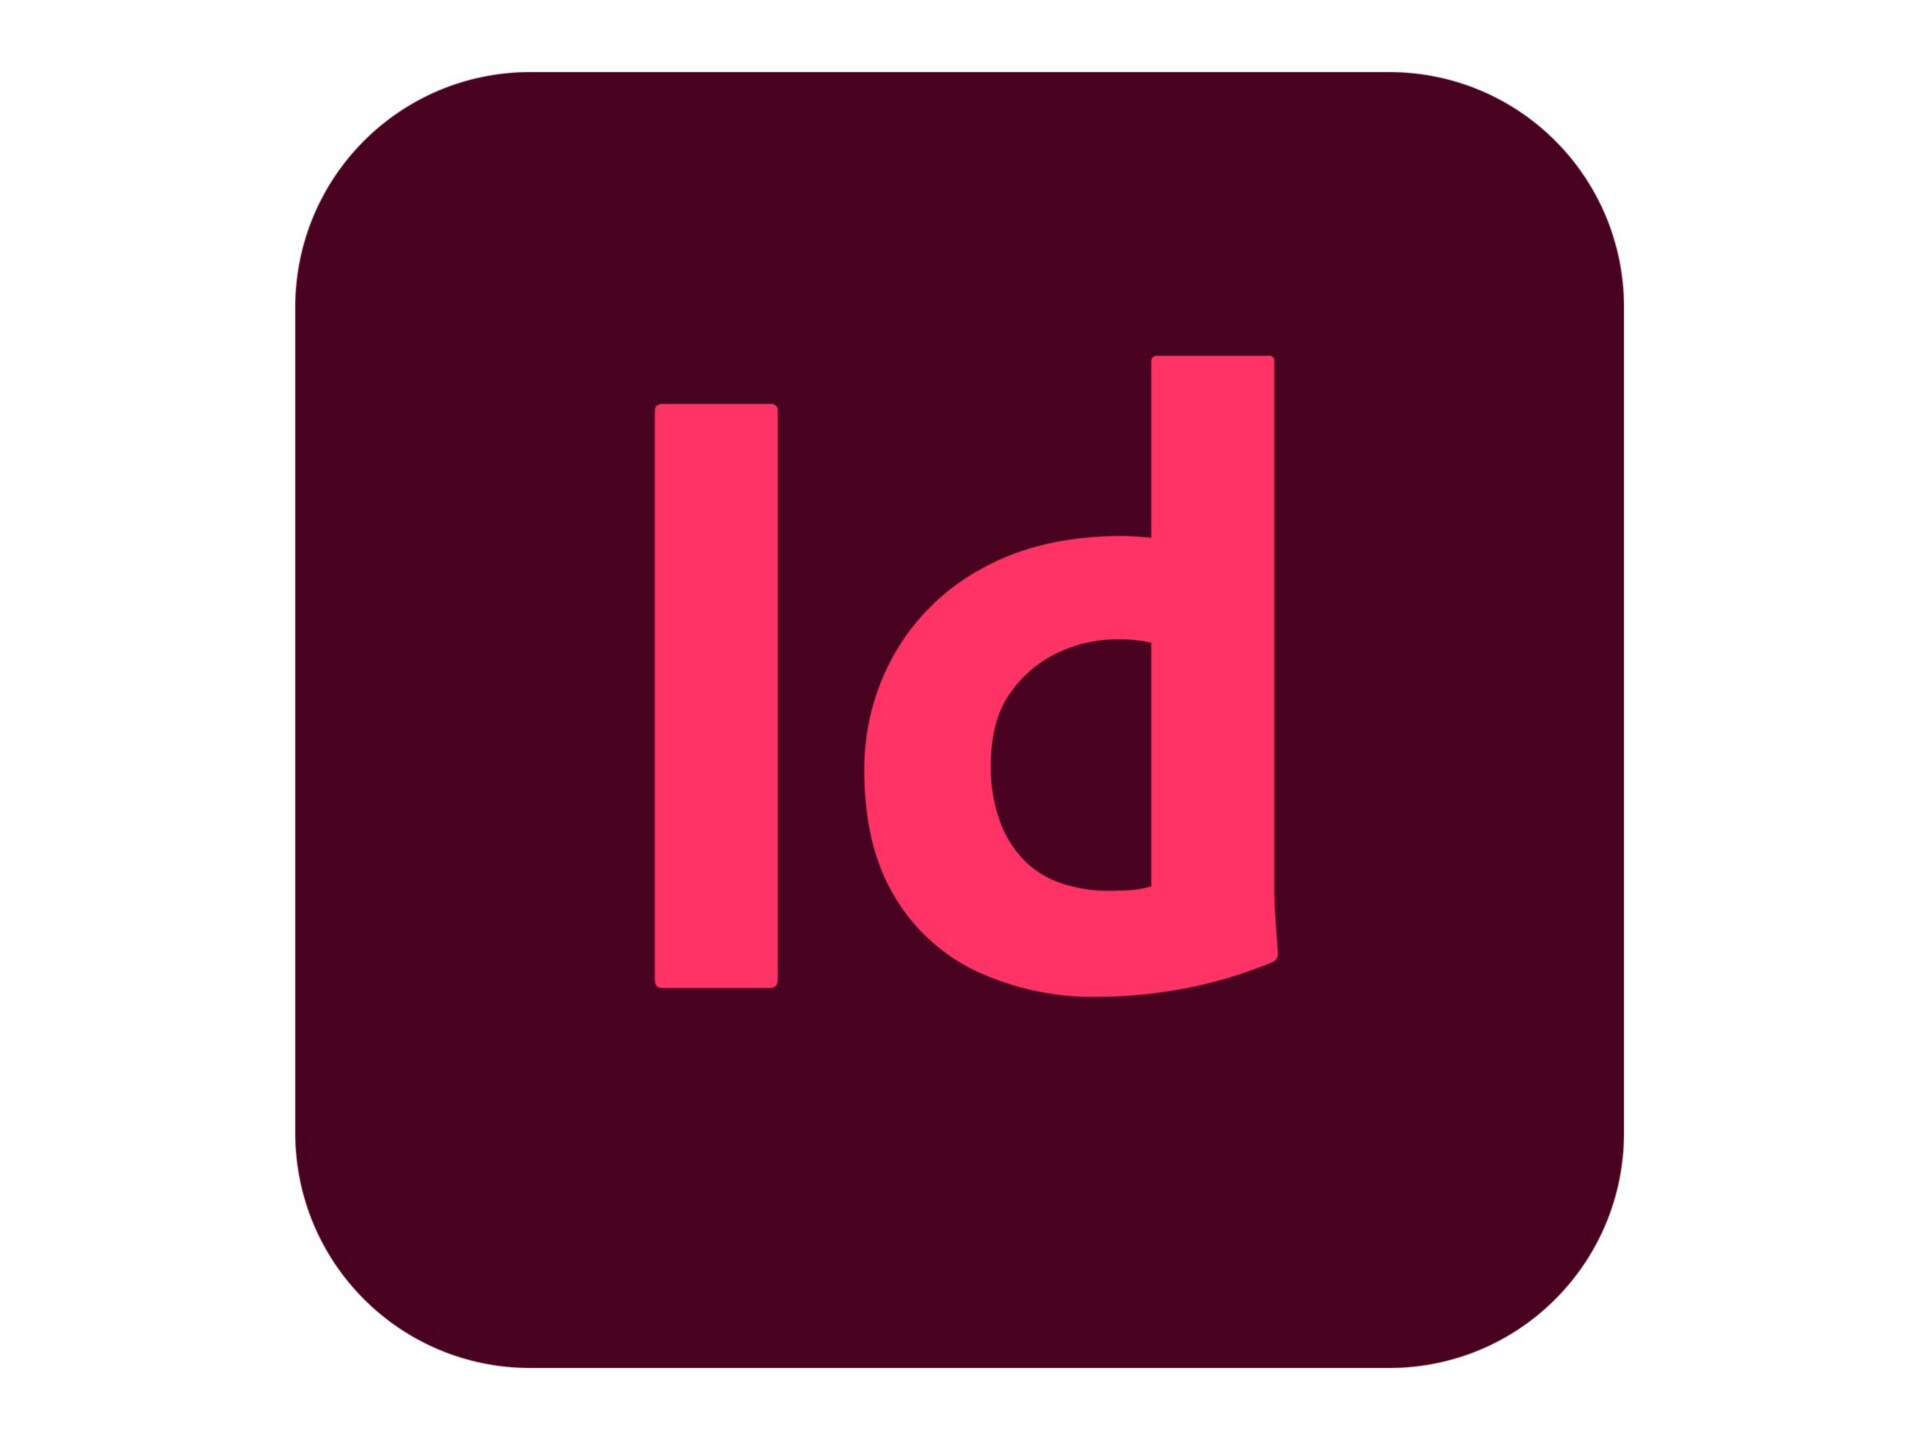 Adobe InDesign CC for Enterprise - Subscription New (35 months) - 1 named u